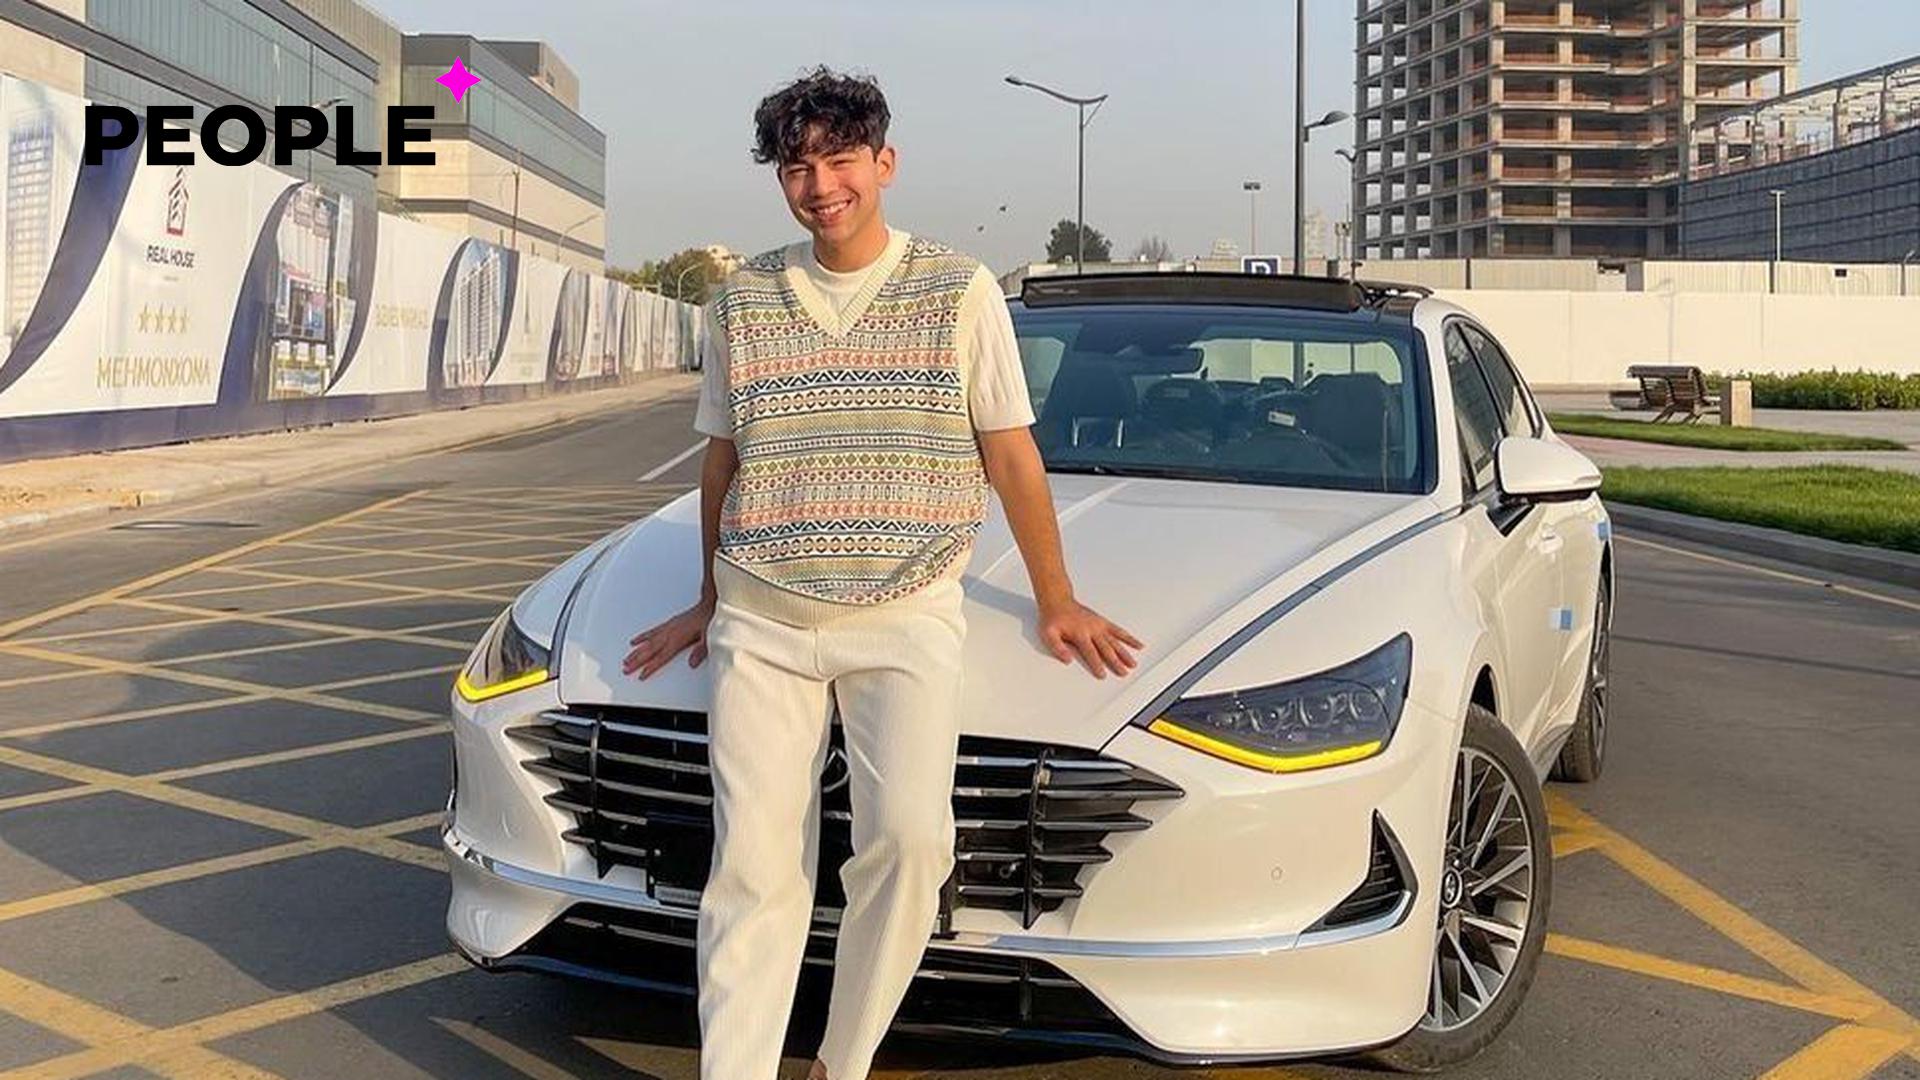 Друг Озода Хурамова разбил его машину стоимостью 250 тысяч долларов — видео